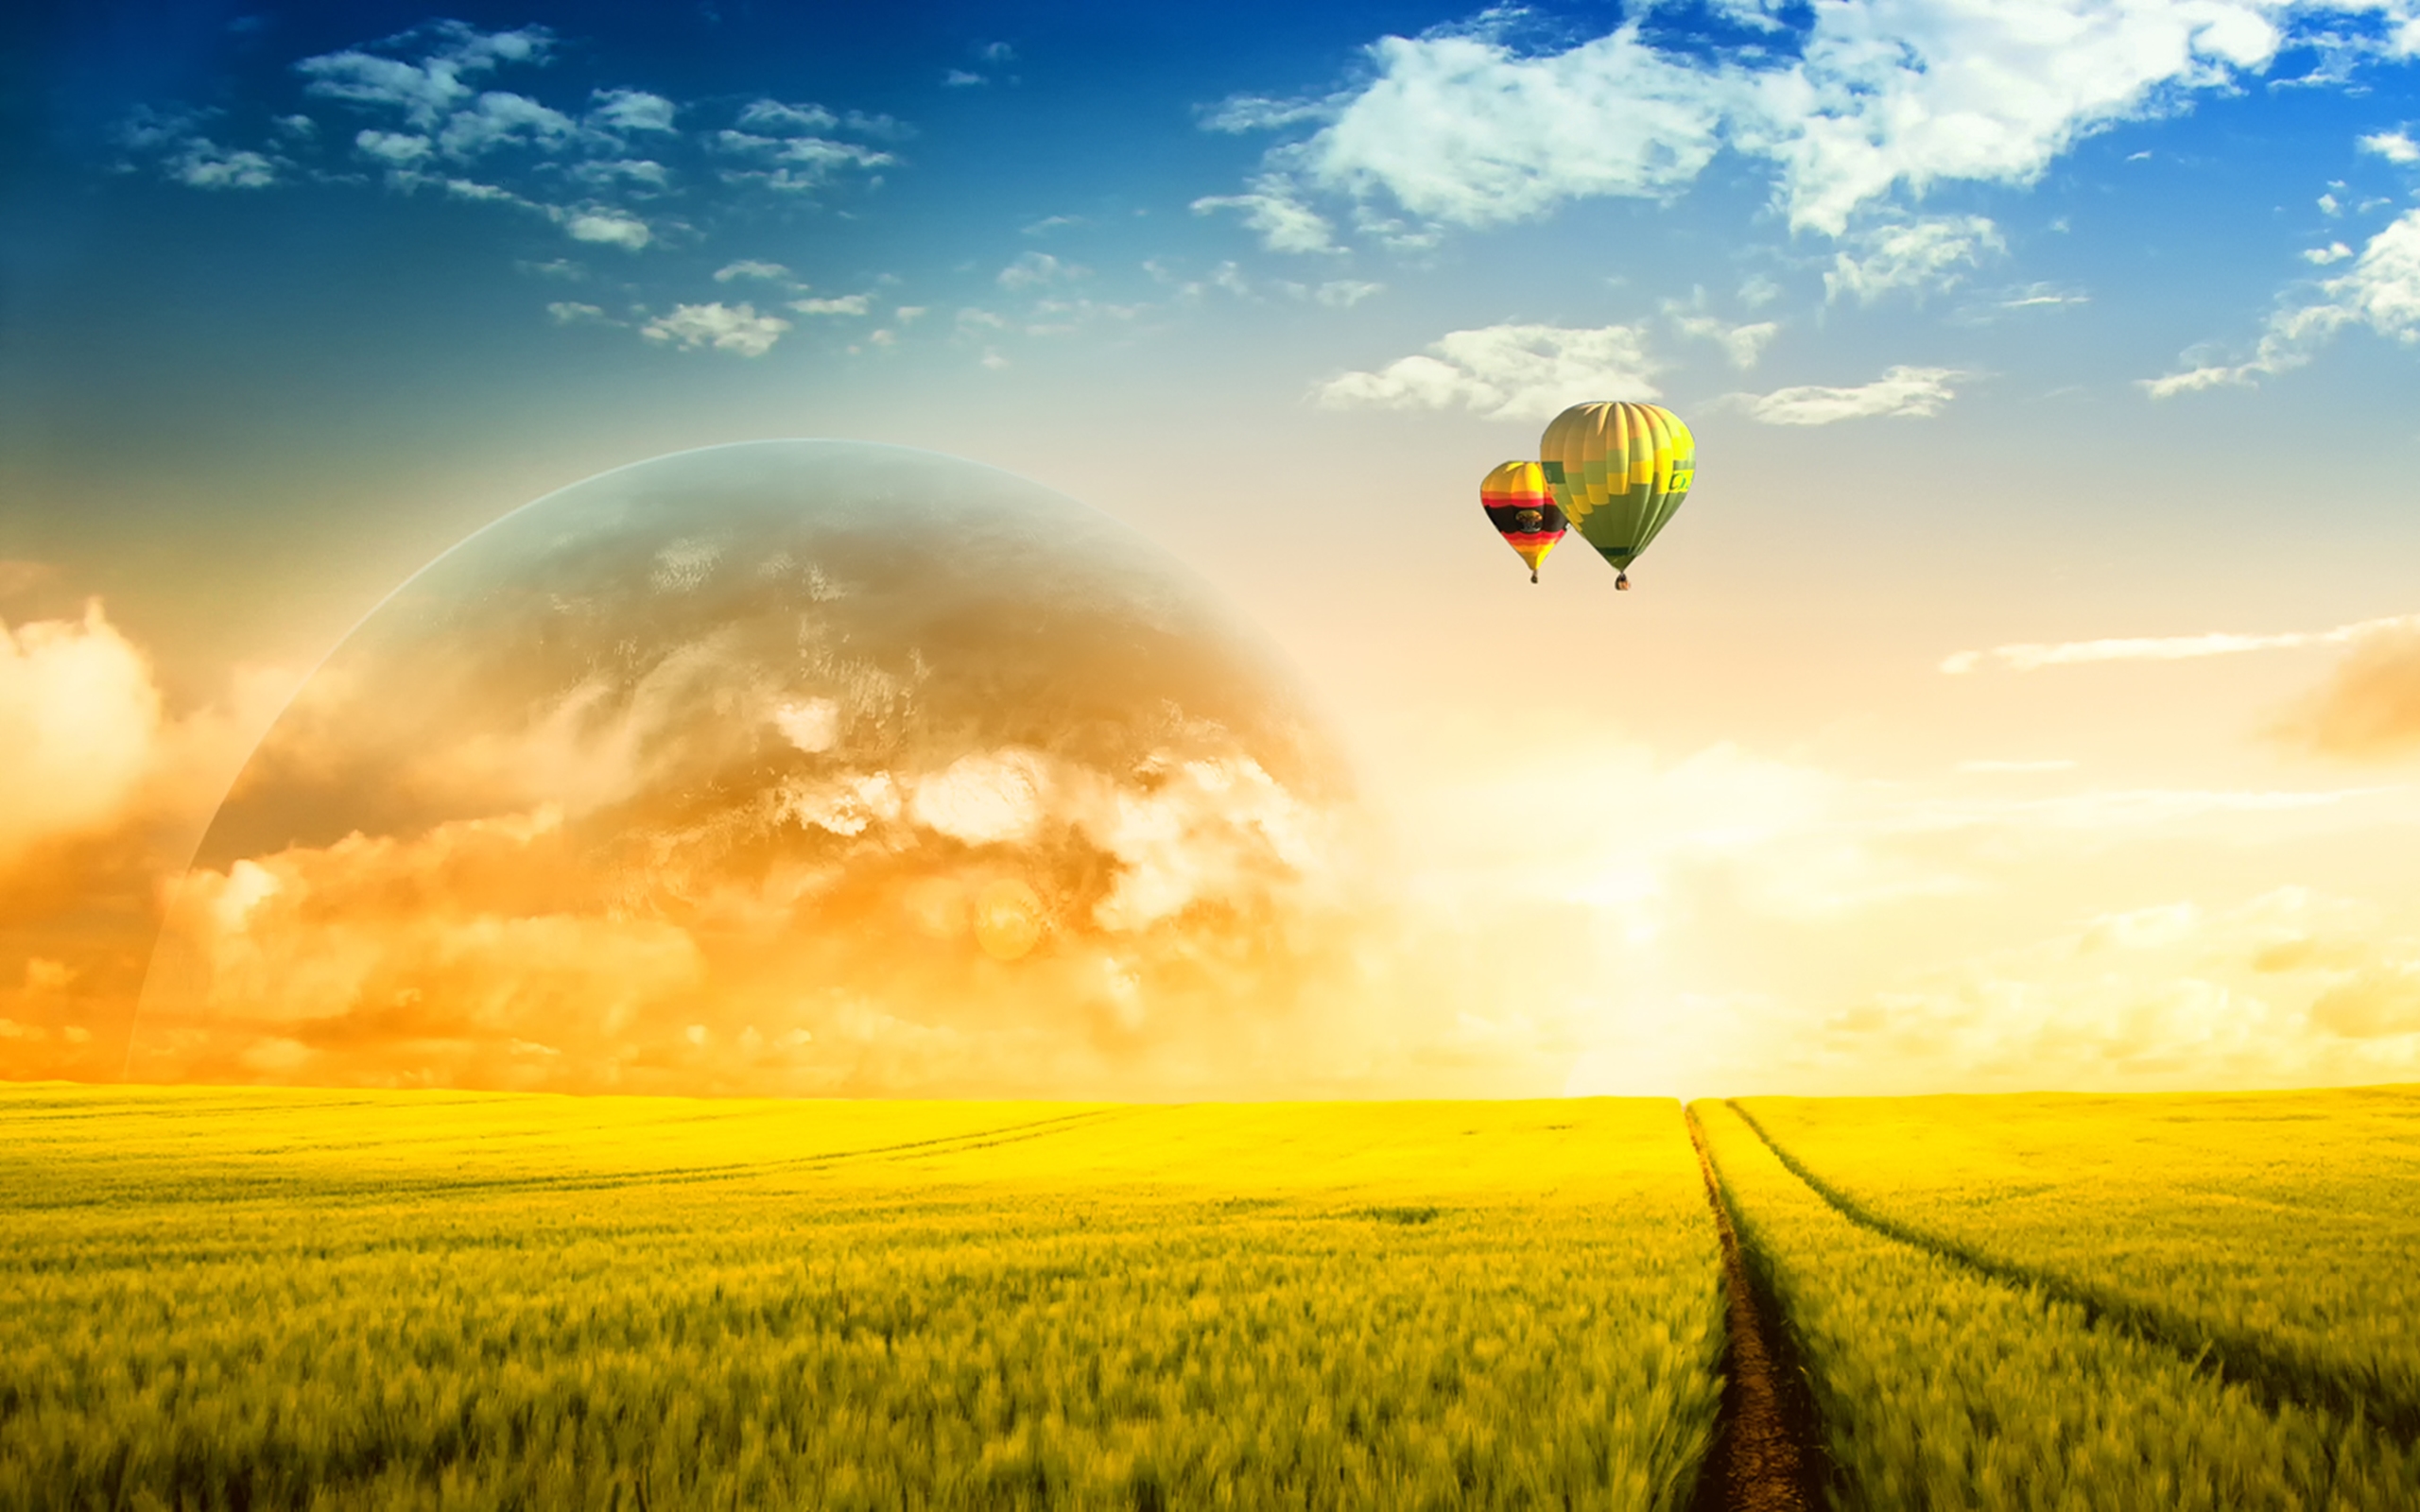 Era dream world. Небо солнце. Воздушные шары над полем. Воздушный шар в небе. Воздушные шары в небе над полем.